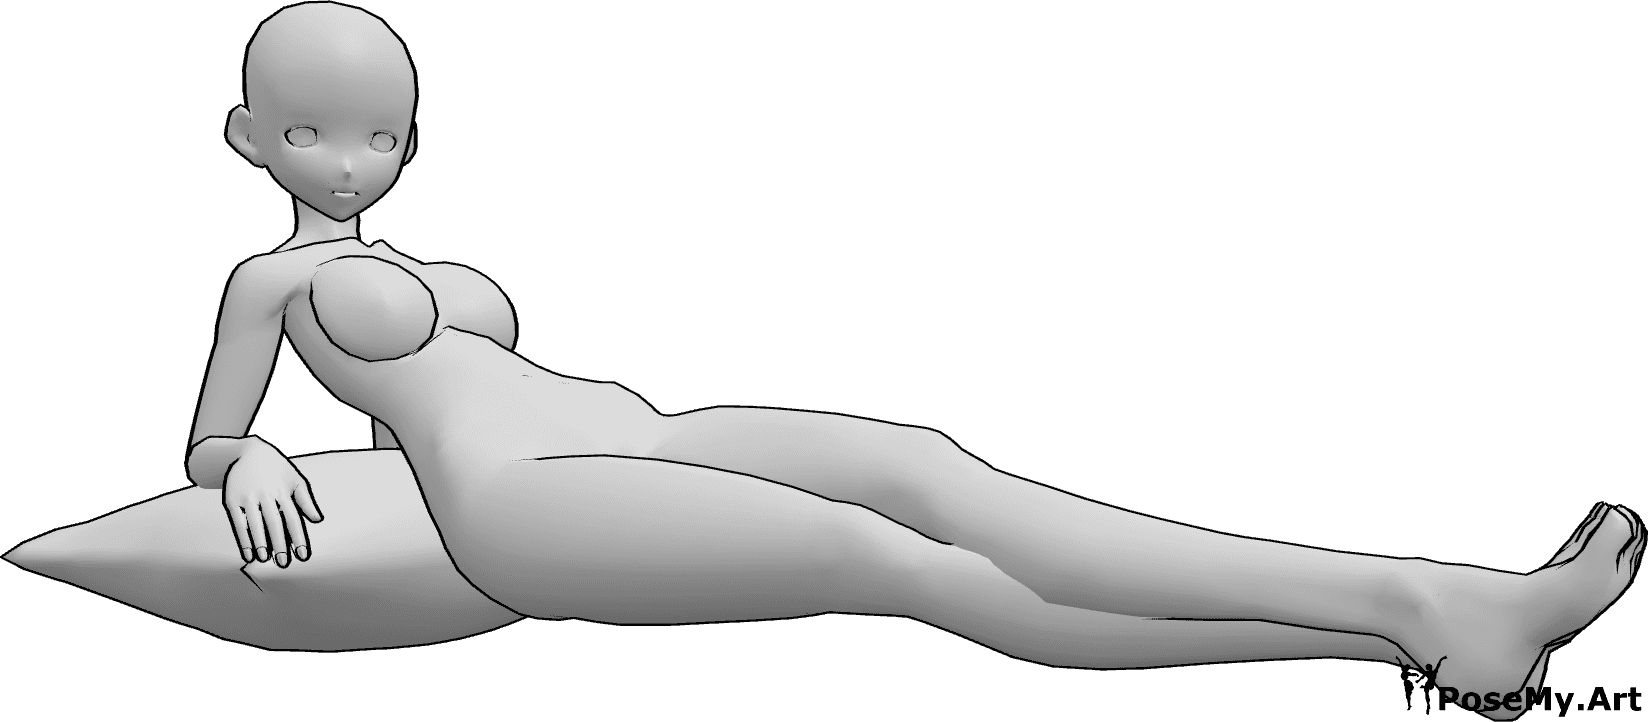 Posen-Referenz- Anime weibliche liegende Pose - Anime-Frau liegt und schaut nach rechts, stützt sich auf ein Kissen